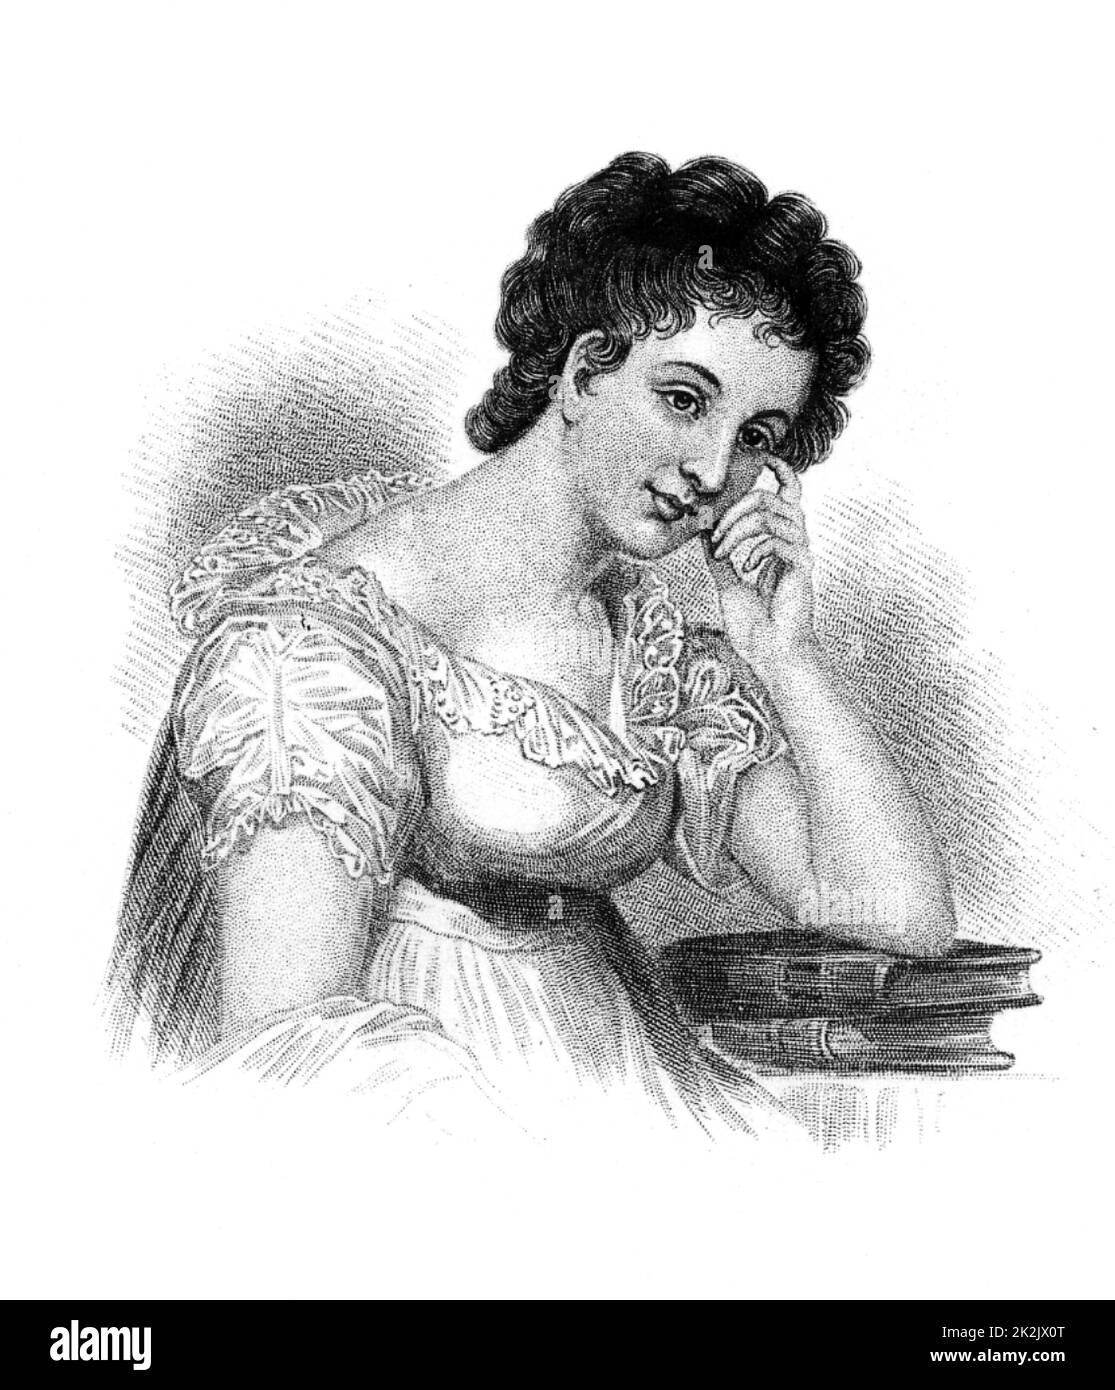 Maria Edgeworth (1767-1849) romancière anglo-irlandaise. Auteur de 'Castle Rackrent' (1800) et 'Belinda' (1801). Fille de Richard Lovell Edgeith, inventeur et éducateur. Gravure. Banque D'Images